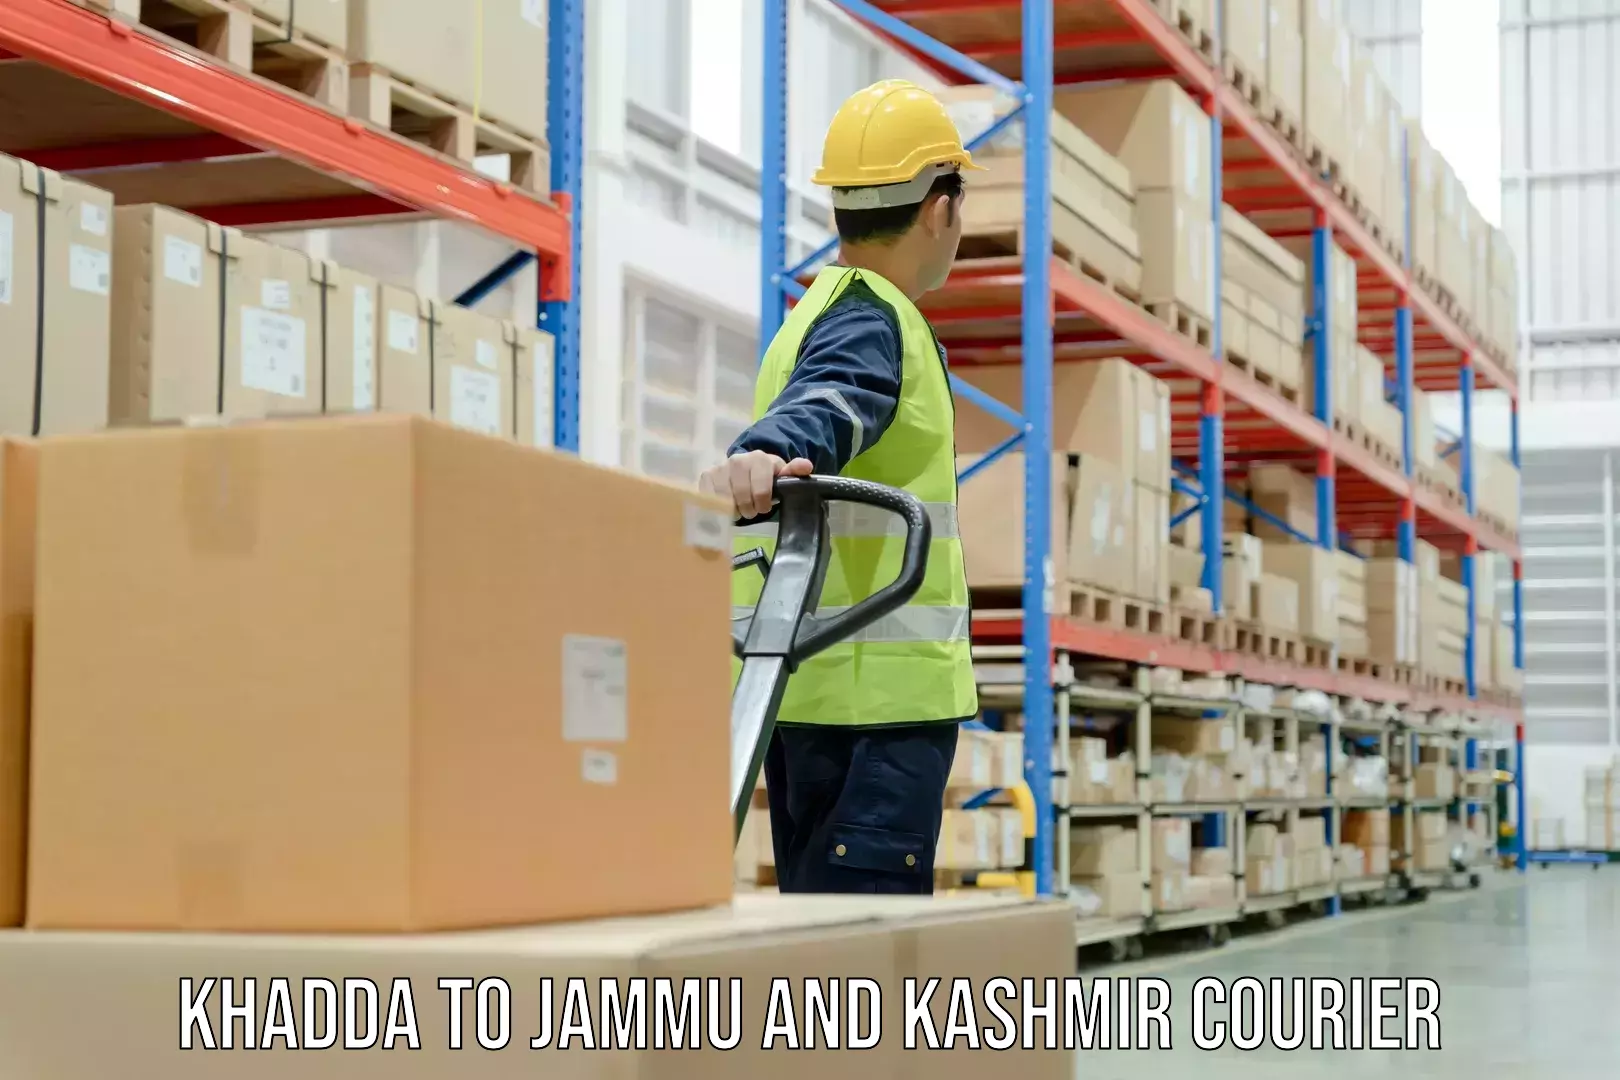 Seamless shipping service Khadda to Jammu and Kashmir